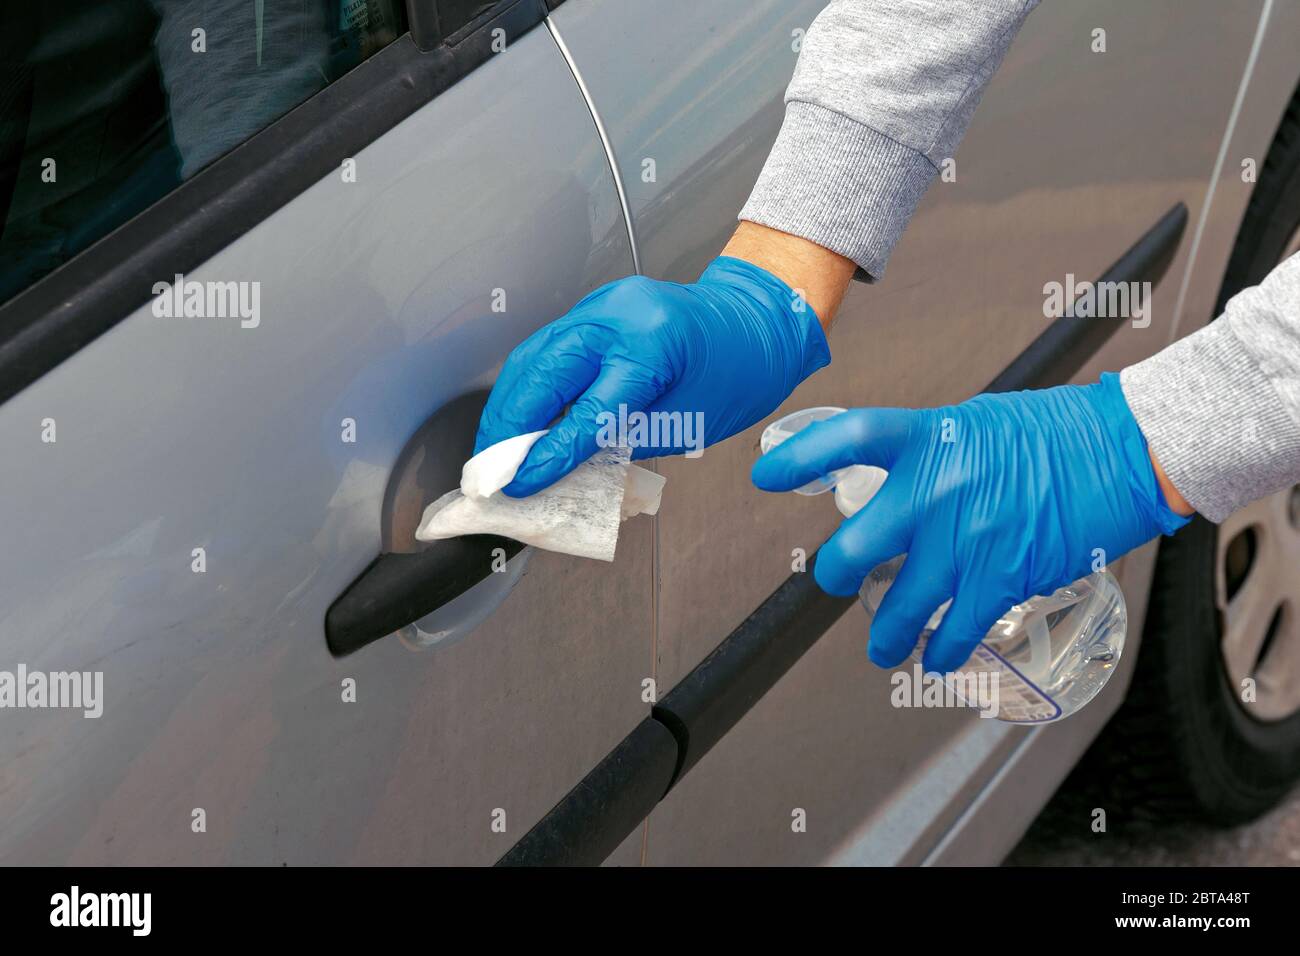 Désinfection automobile. Un homme en gants essuie la porte de la voiture avec un désinfectant. Banque D'Images